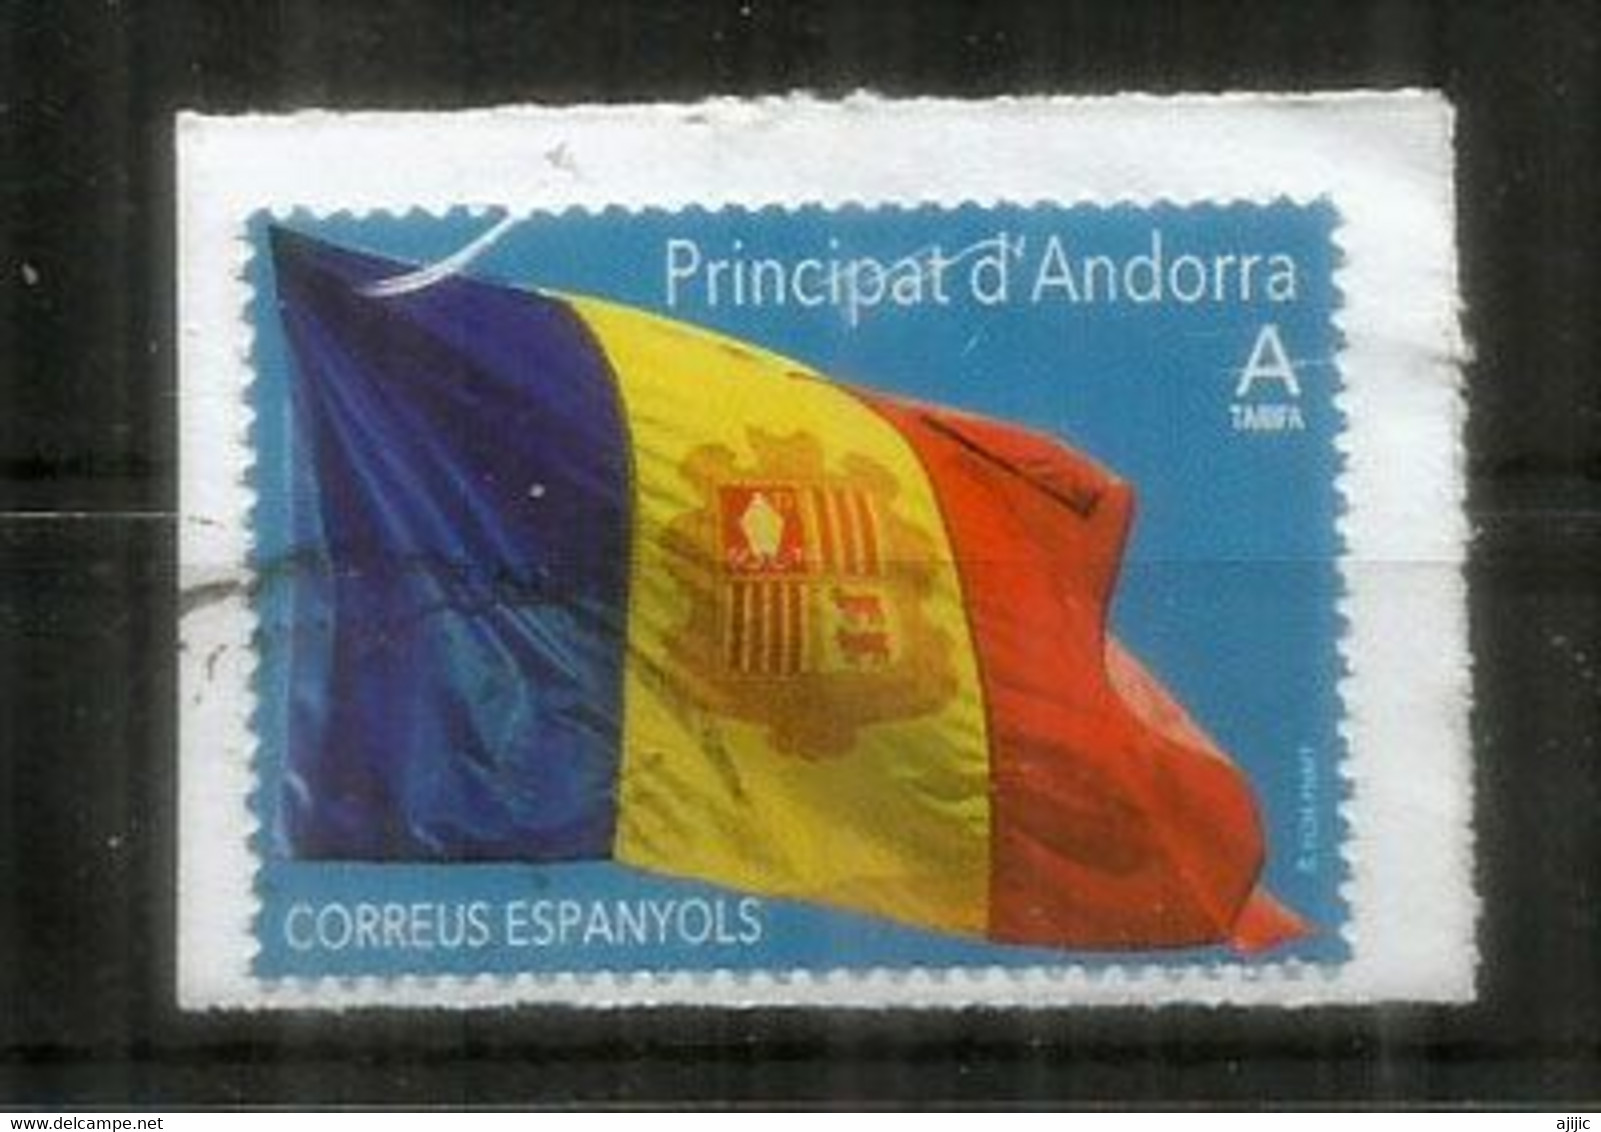 Bandera D'Andorra /Drapeau D'Andorre. (Poder és Més Fort) 2020, Usado, Primera Calidad. AND ESP - Used Stamps